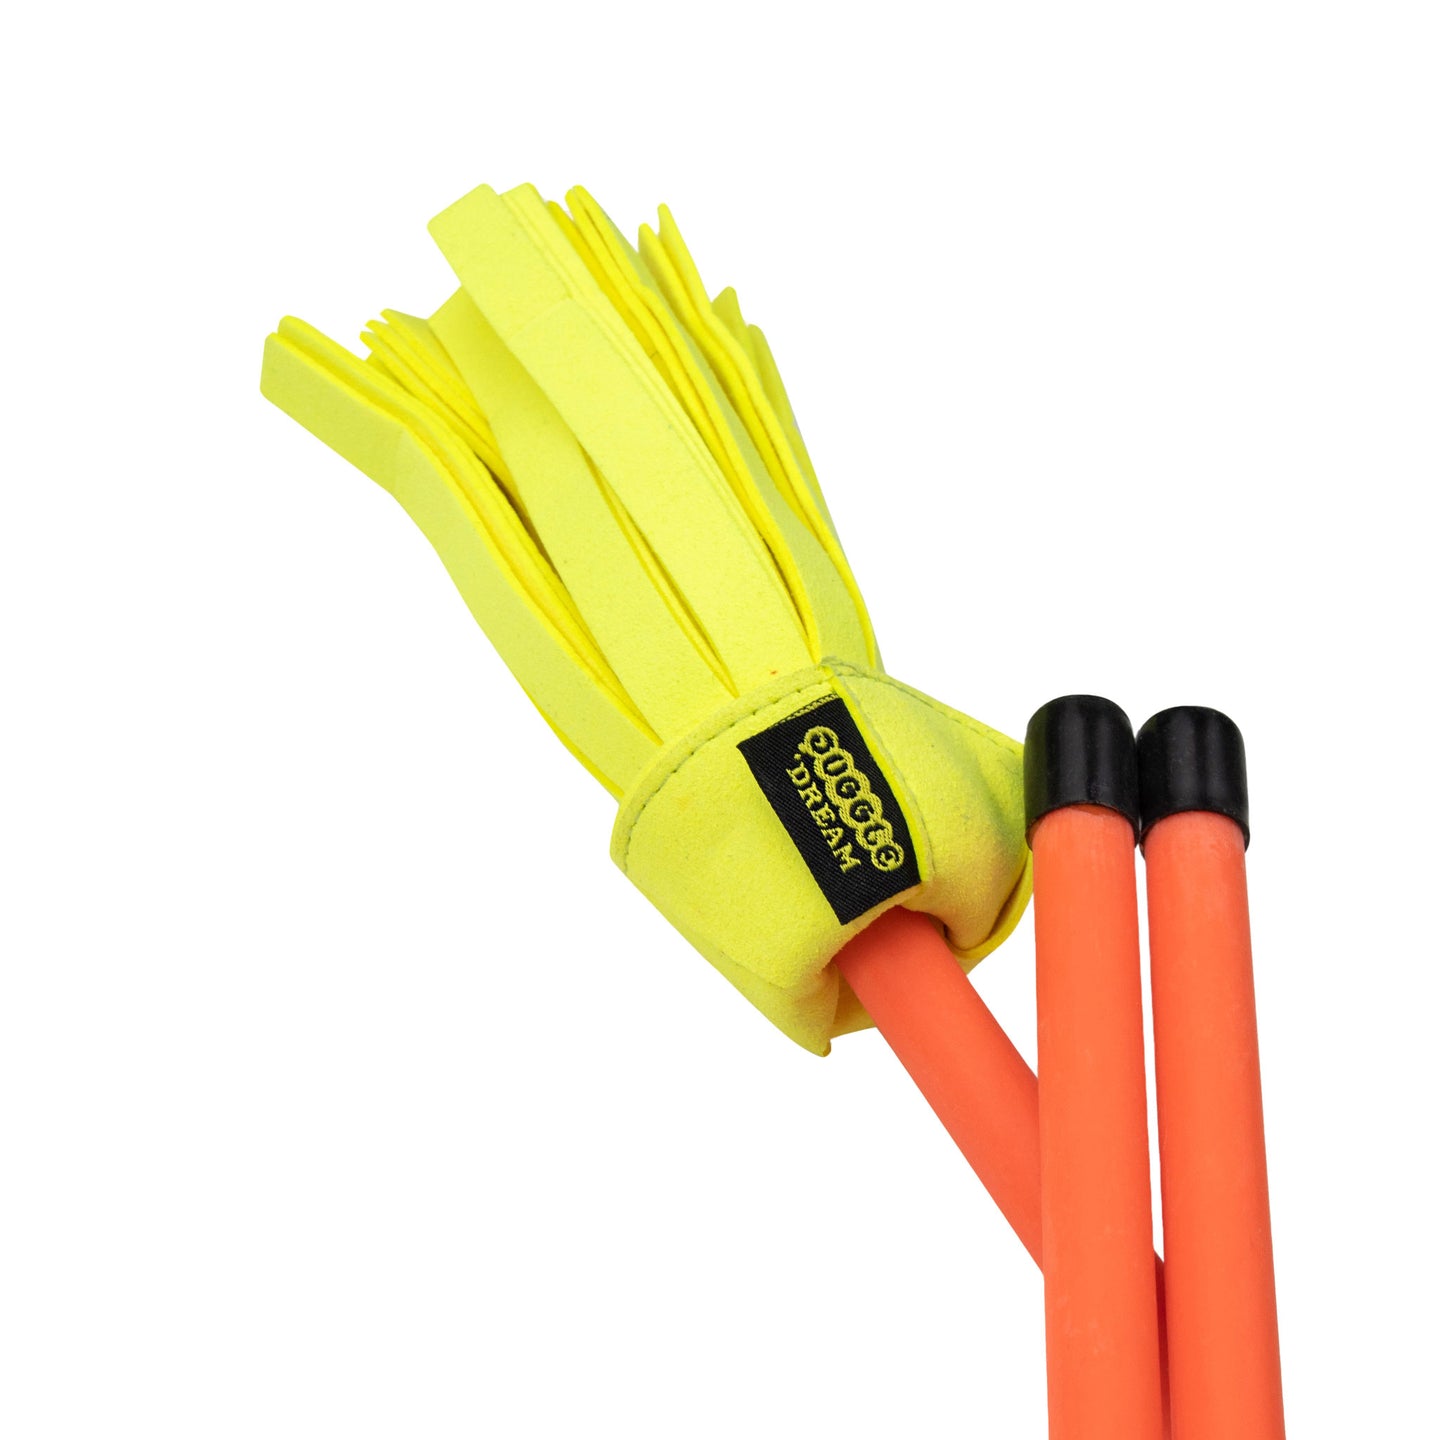 Close-up of Yellow/ Orange Flower Stick tassels with handsticks